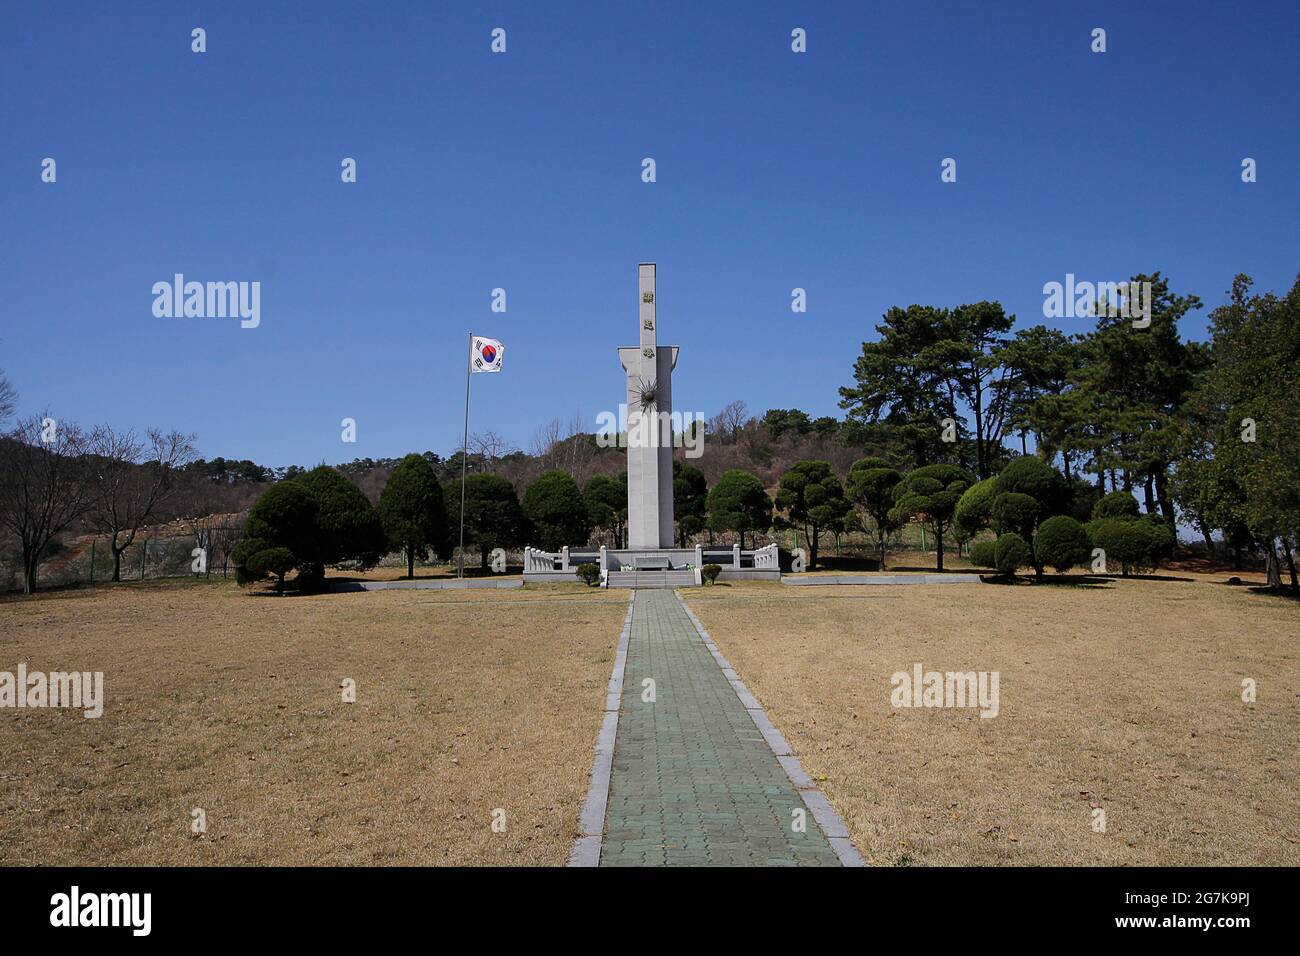 11 avril 2018-Goyang, Corée du Sud-UN monument de souvenirs des anciens combattants de la guerre de Corée. Pour admirer la grande réalisation, les troupes du 17e régiment de l'armée ont fait dans les batailles du district de Yeoncheon du 17 décembre 1950 au 15 mars 1951. Et pour honorer la liberté et la paix de la nation. Banque D'Images